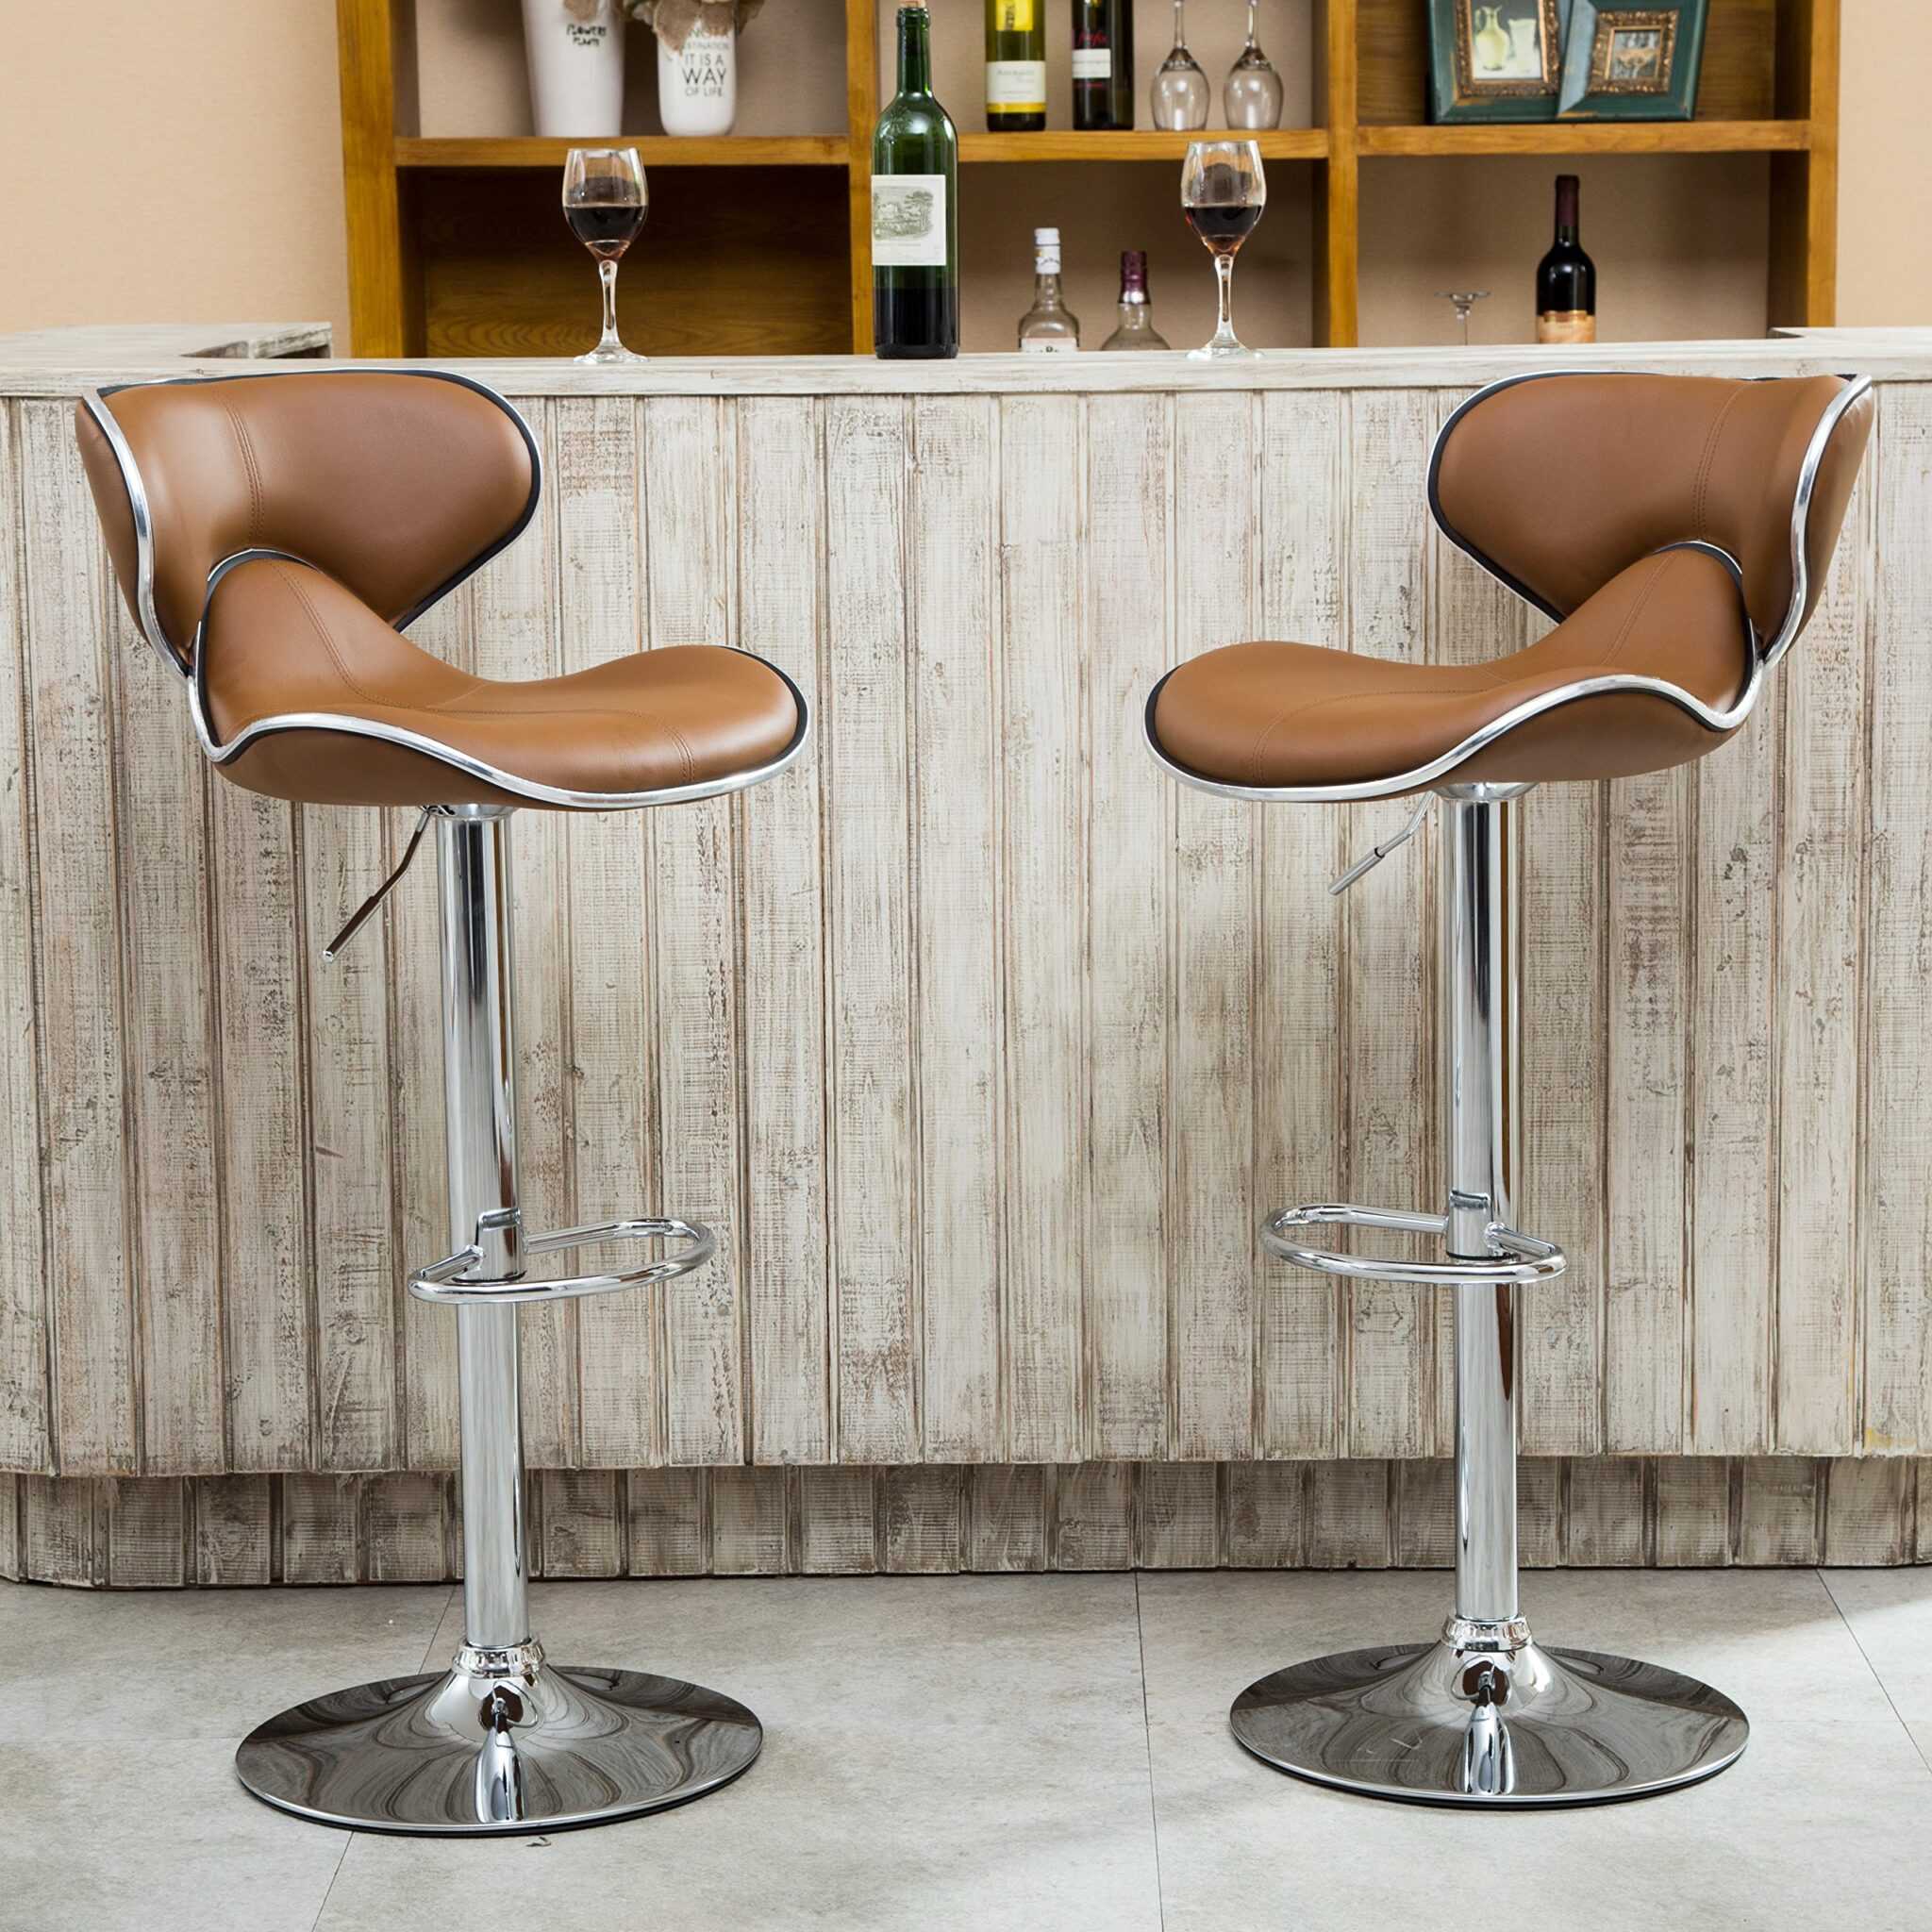 Как купить барные стулья для кухни и не прогадать: 7 советов по выбору | строительный блог вити петрова